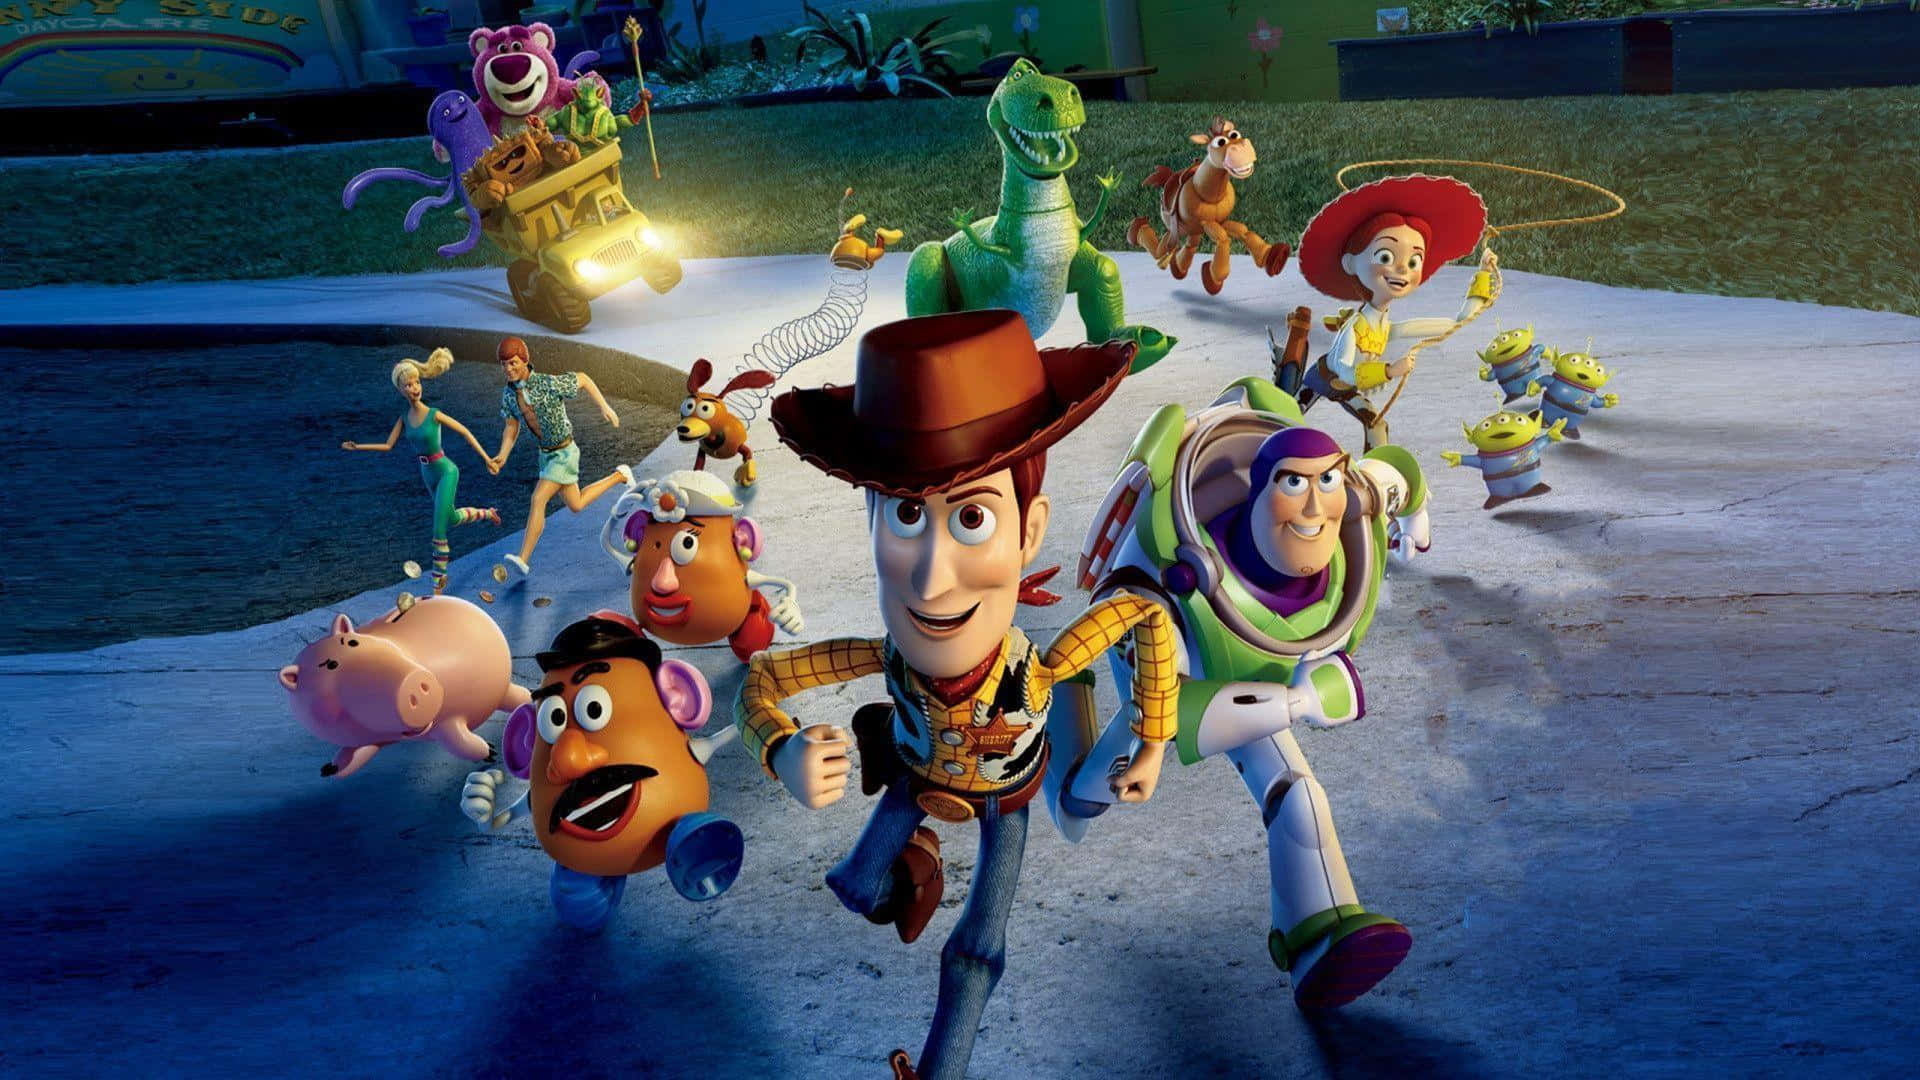 Losmejores Personajes De Fondo De Disney En Toy Story 3